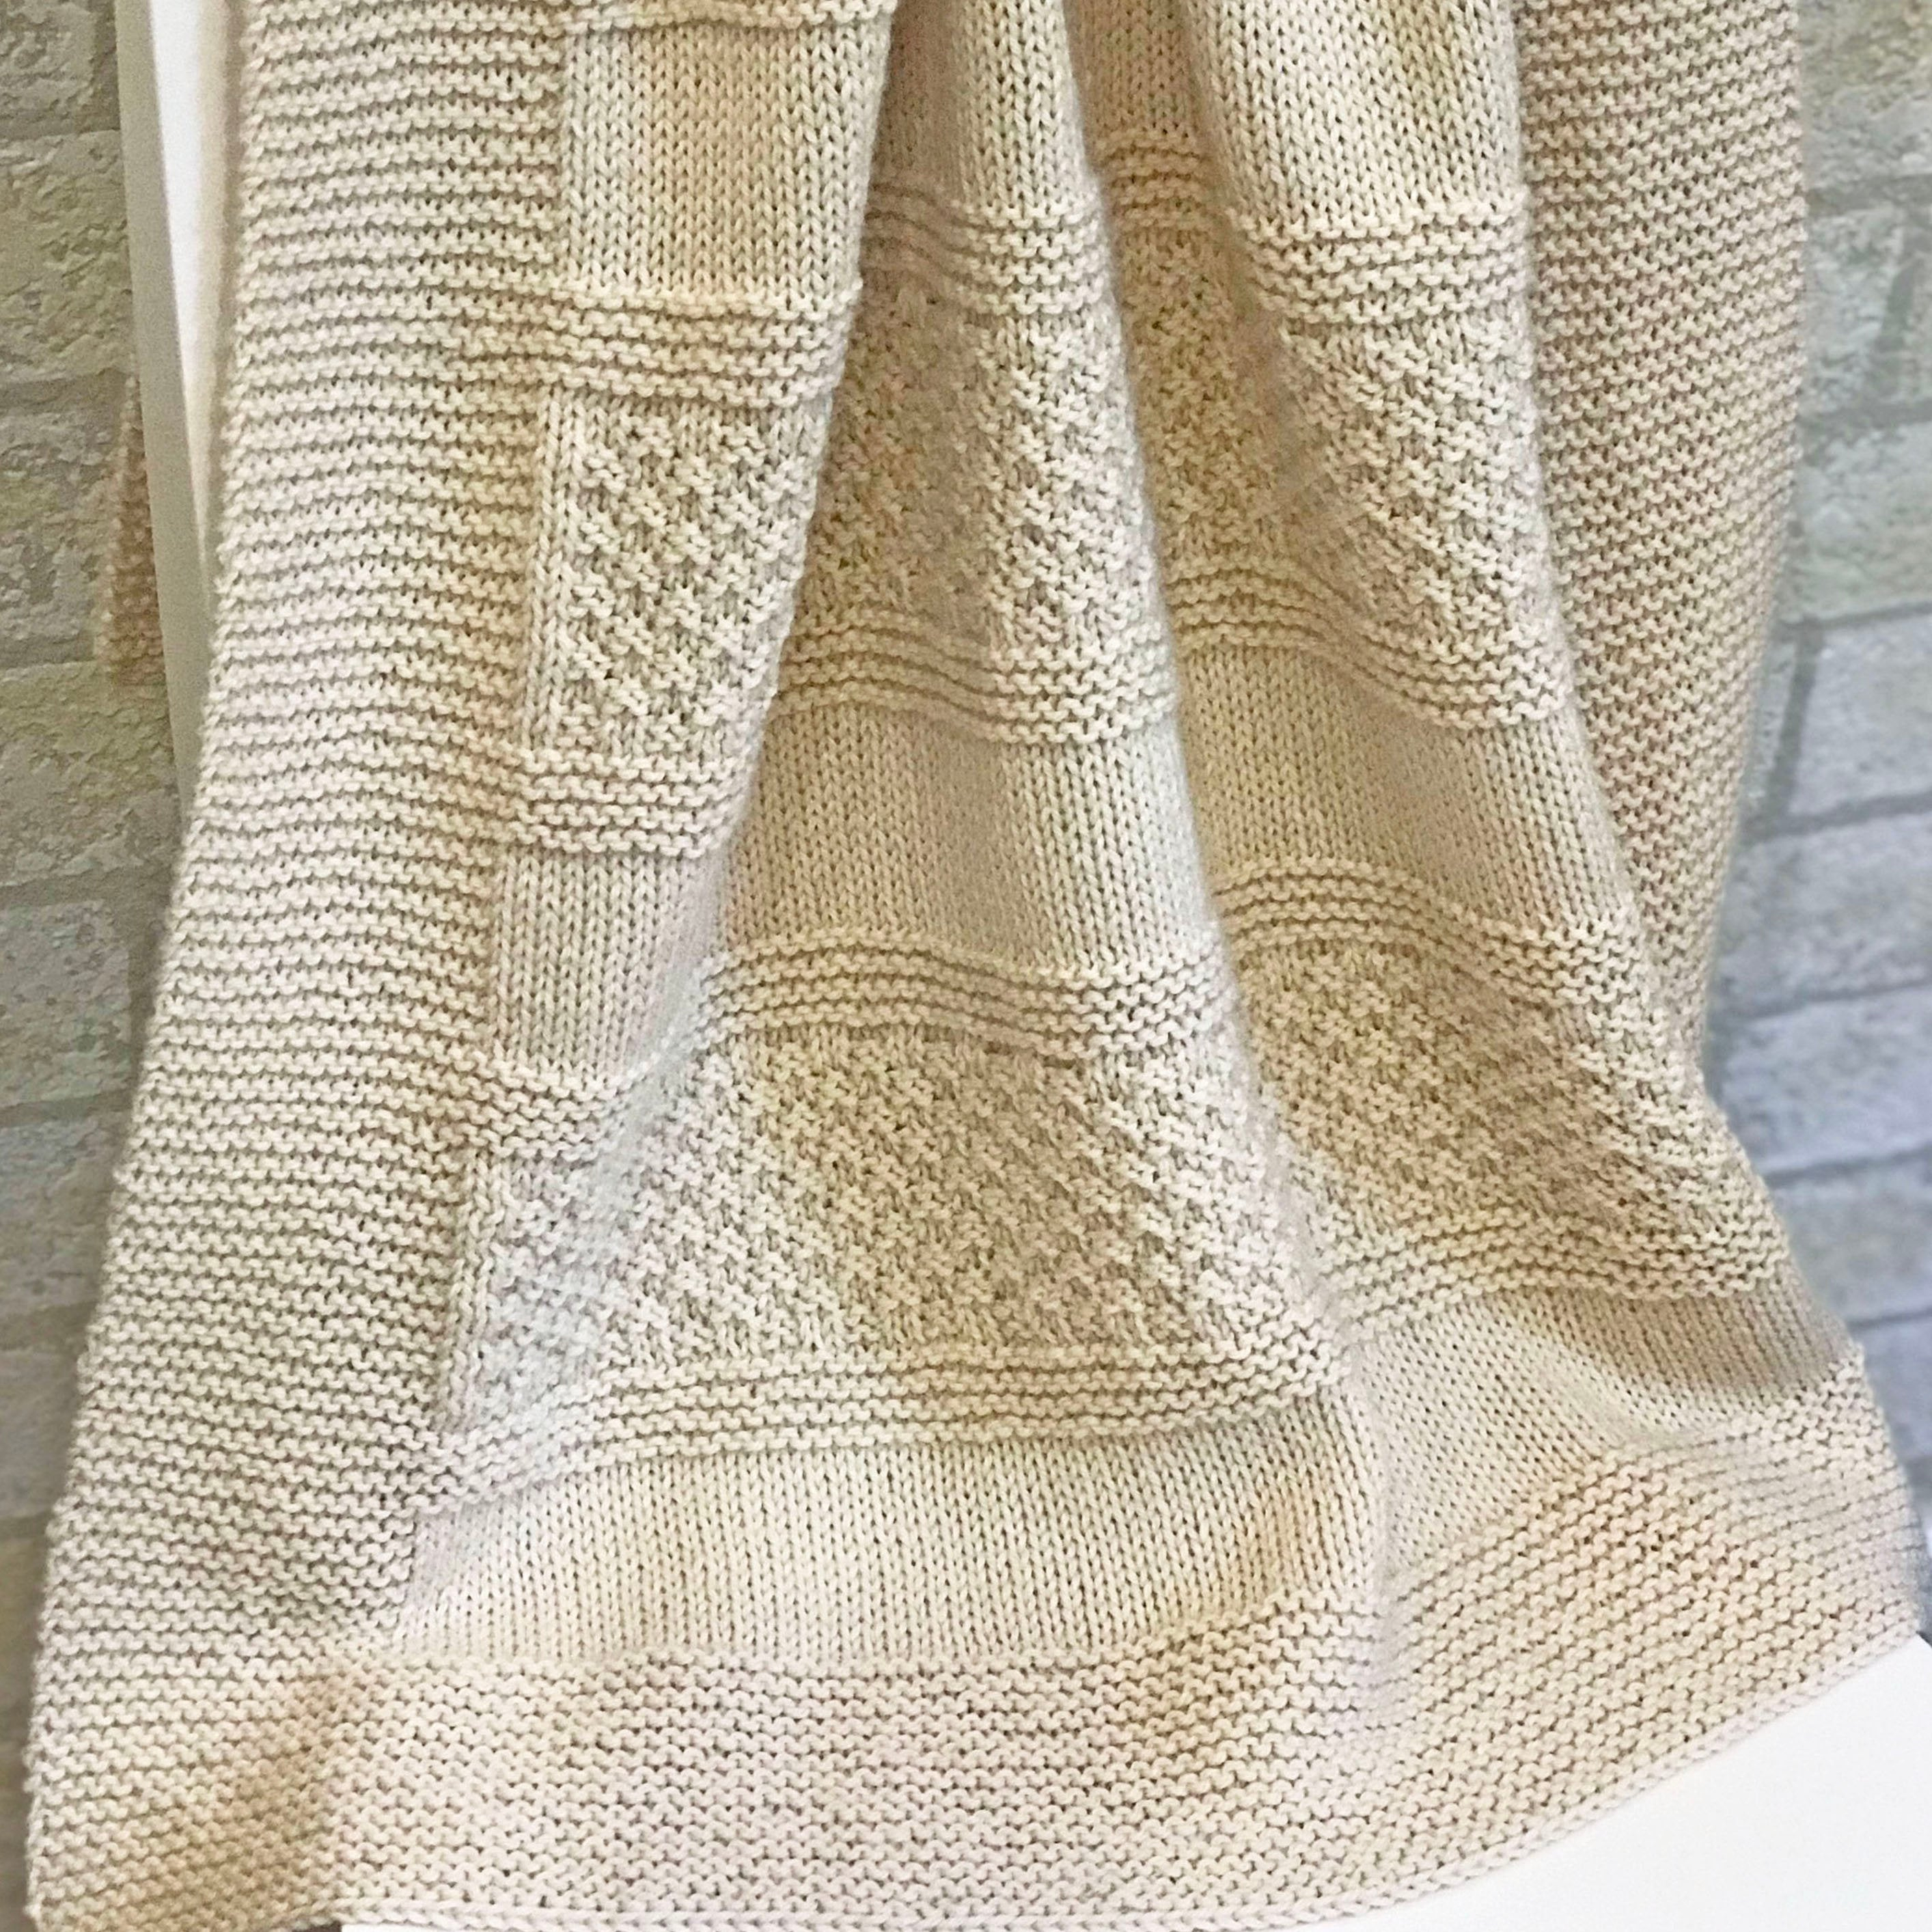 Pattern Knit Knit Ba Blanket Pattern Brighten Blanket Knitting Ba Pattern Deborah Oleary Patterns